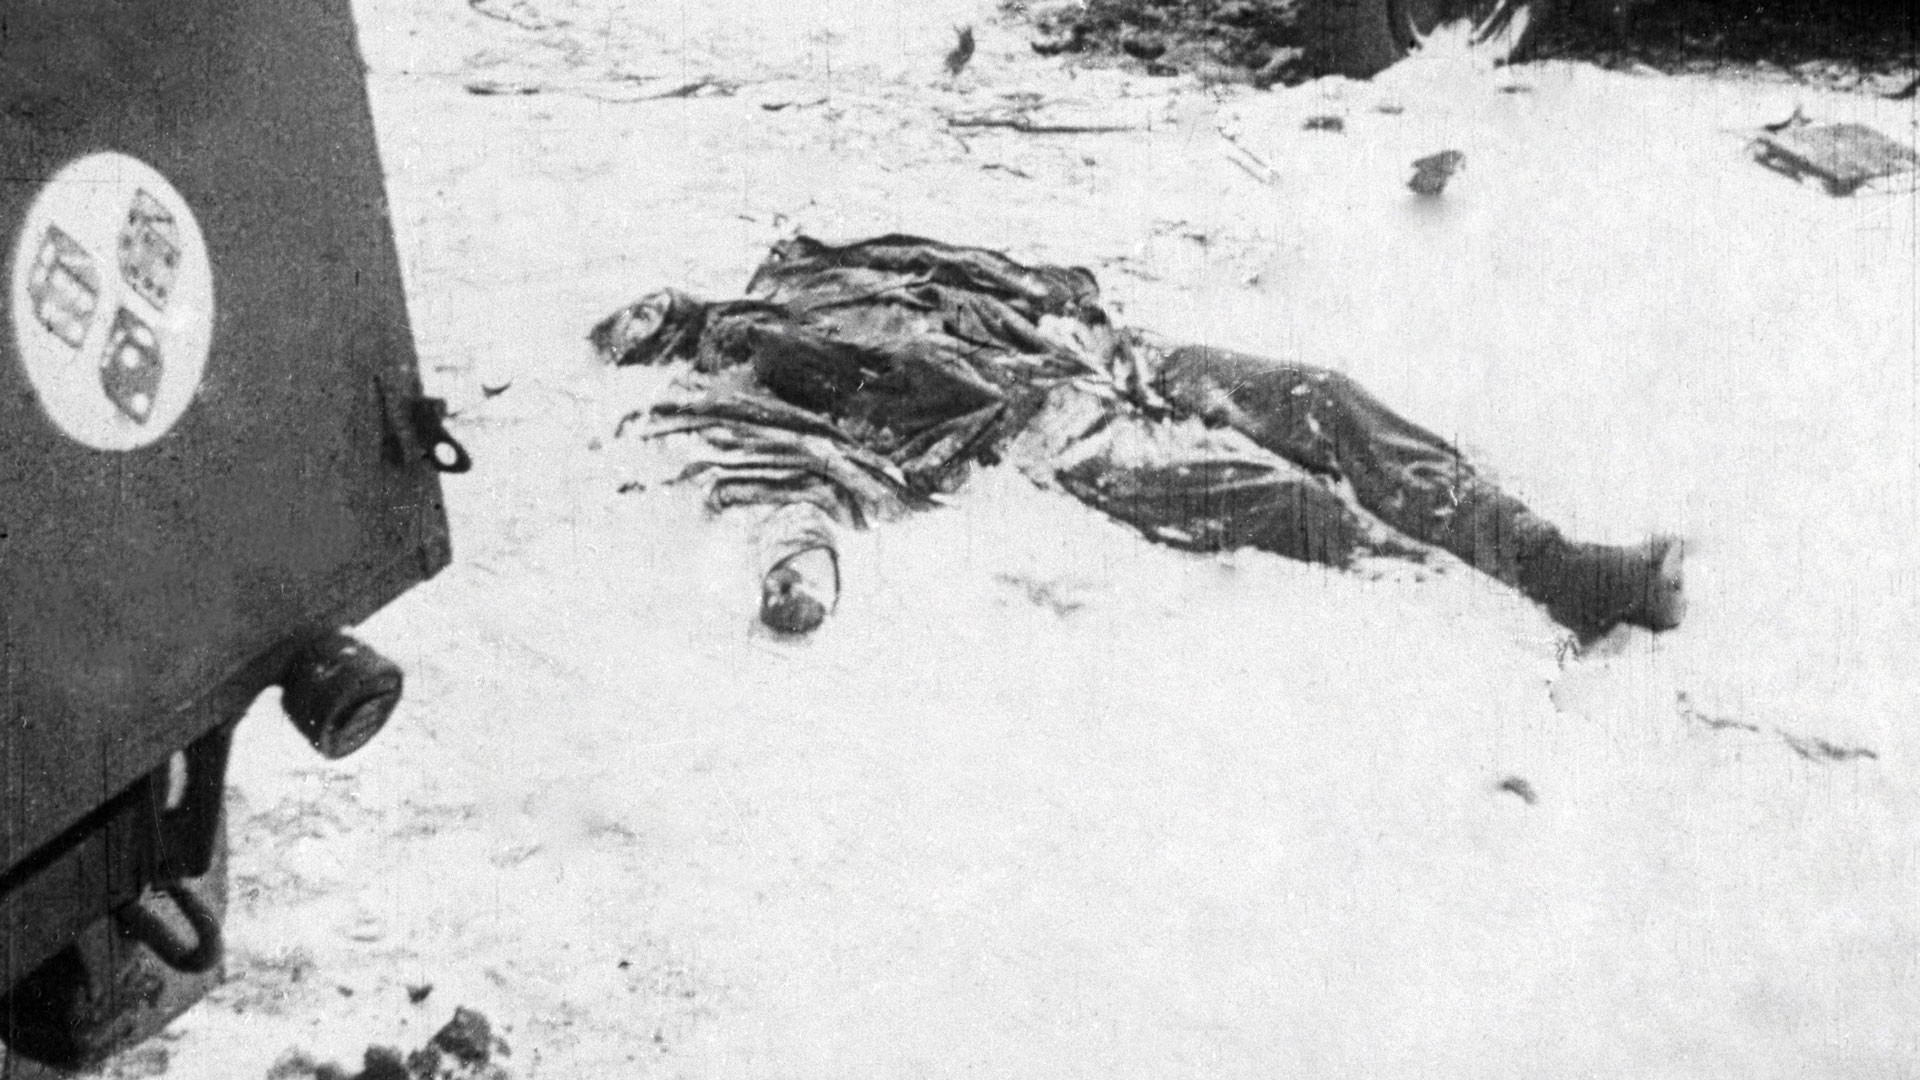 Тело немецкого солдата, убитого в бою под Сталинградом. Фото © РИА "Новости"